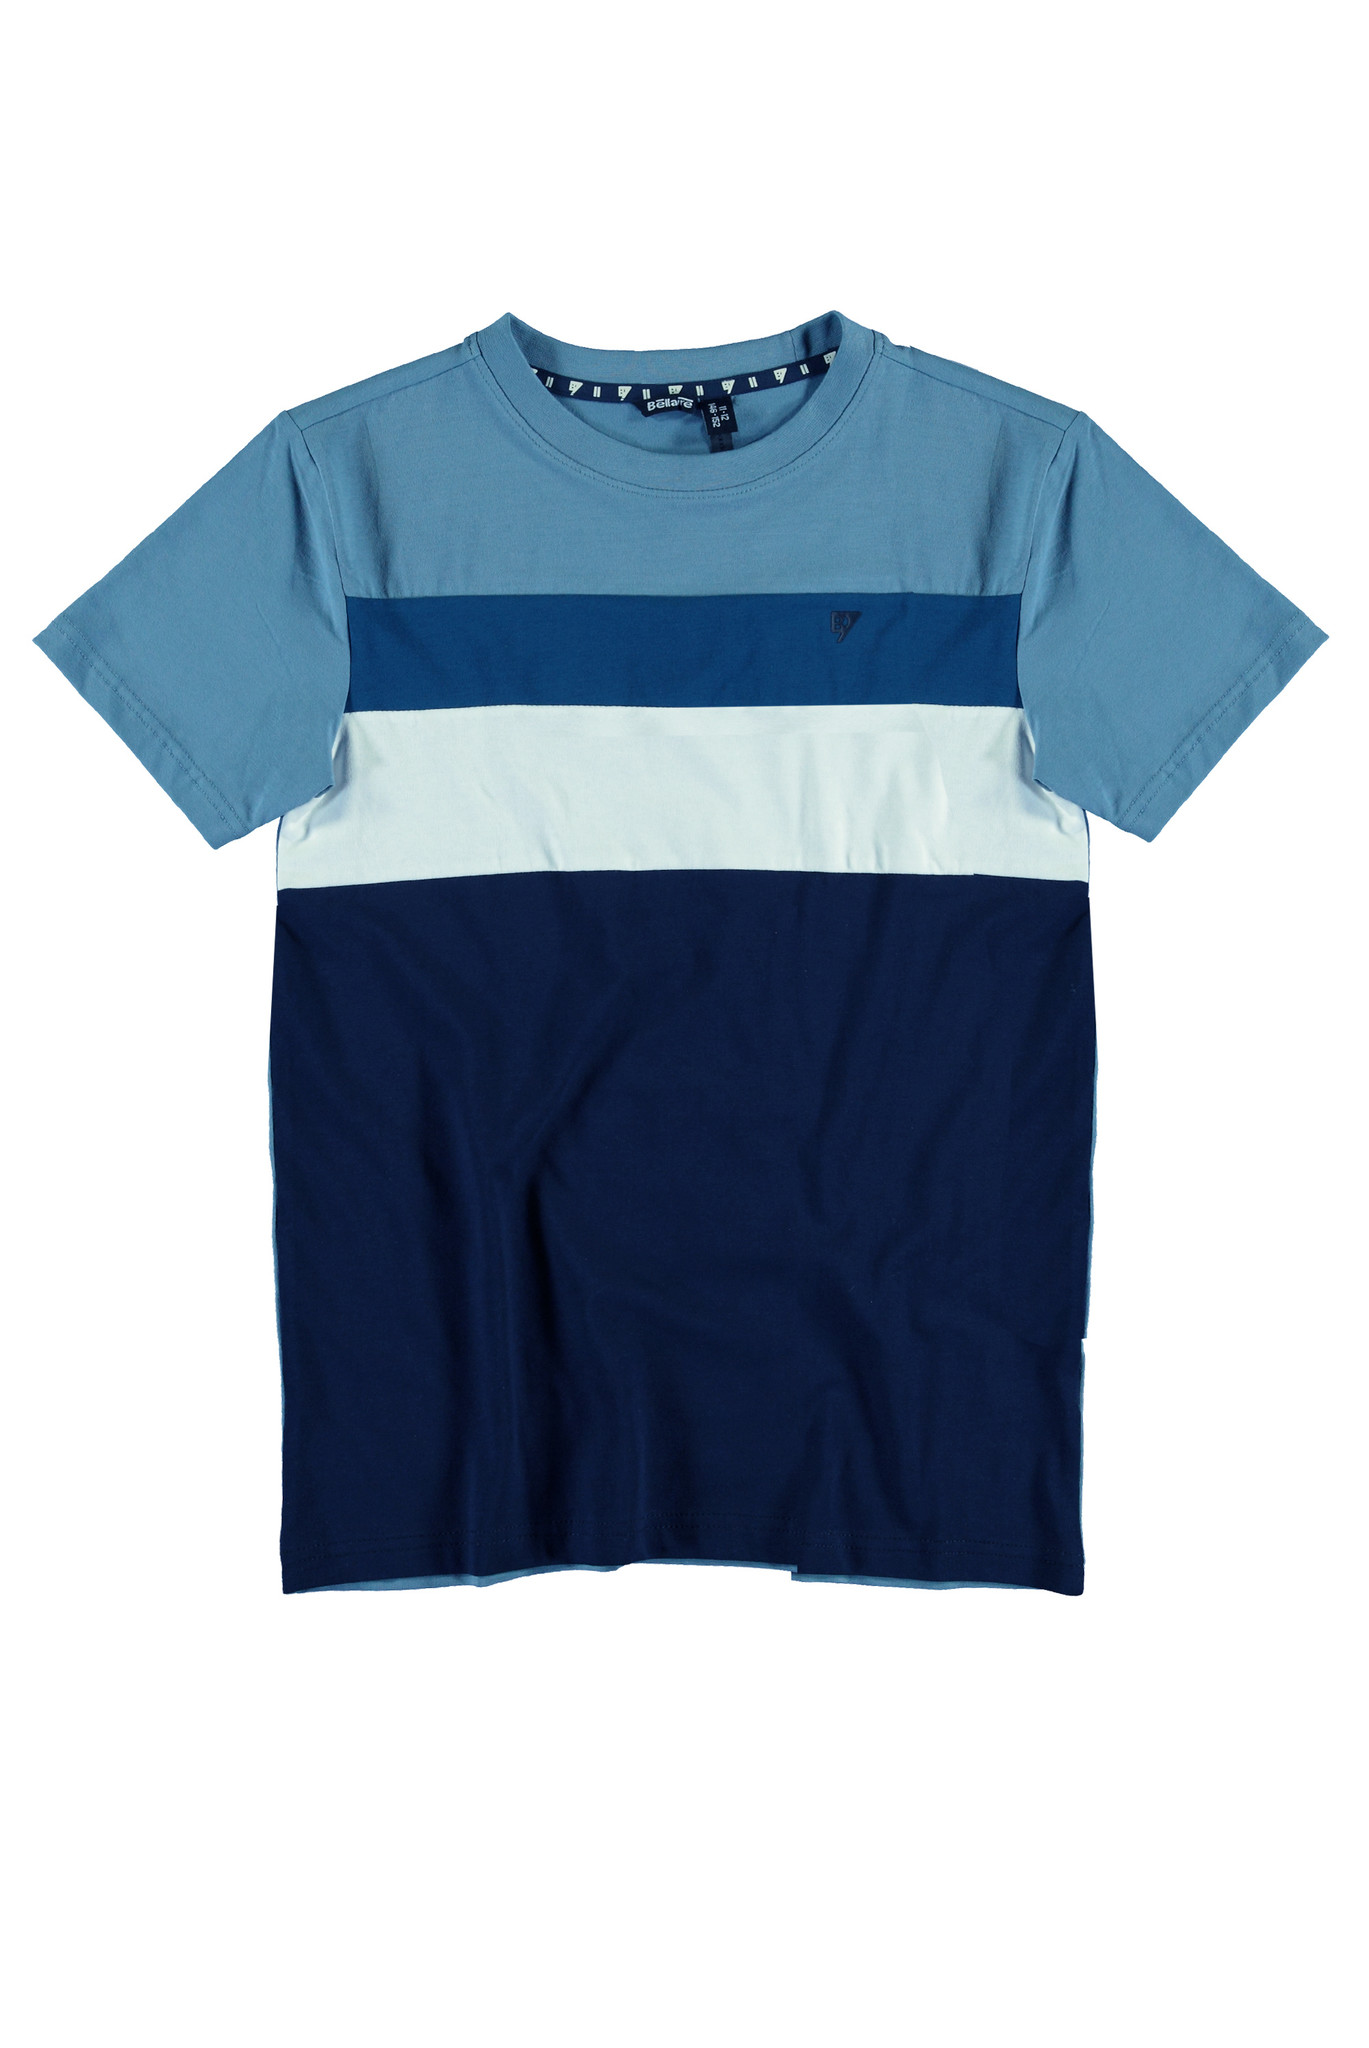 Bellaire Jongens t-shirt - Blauw shadow